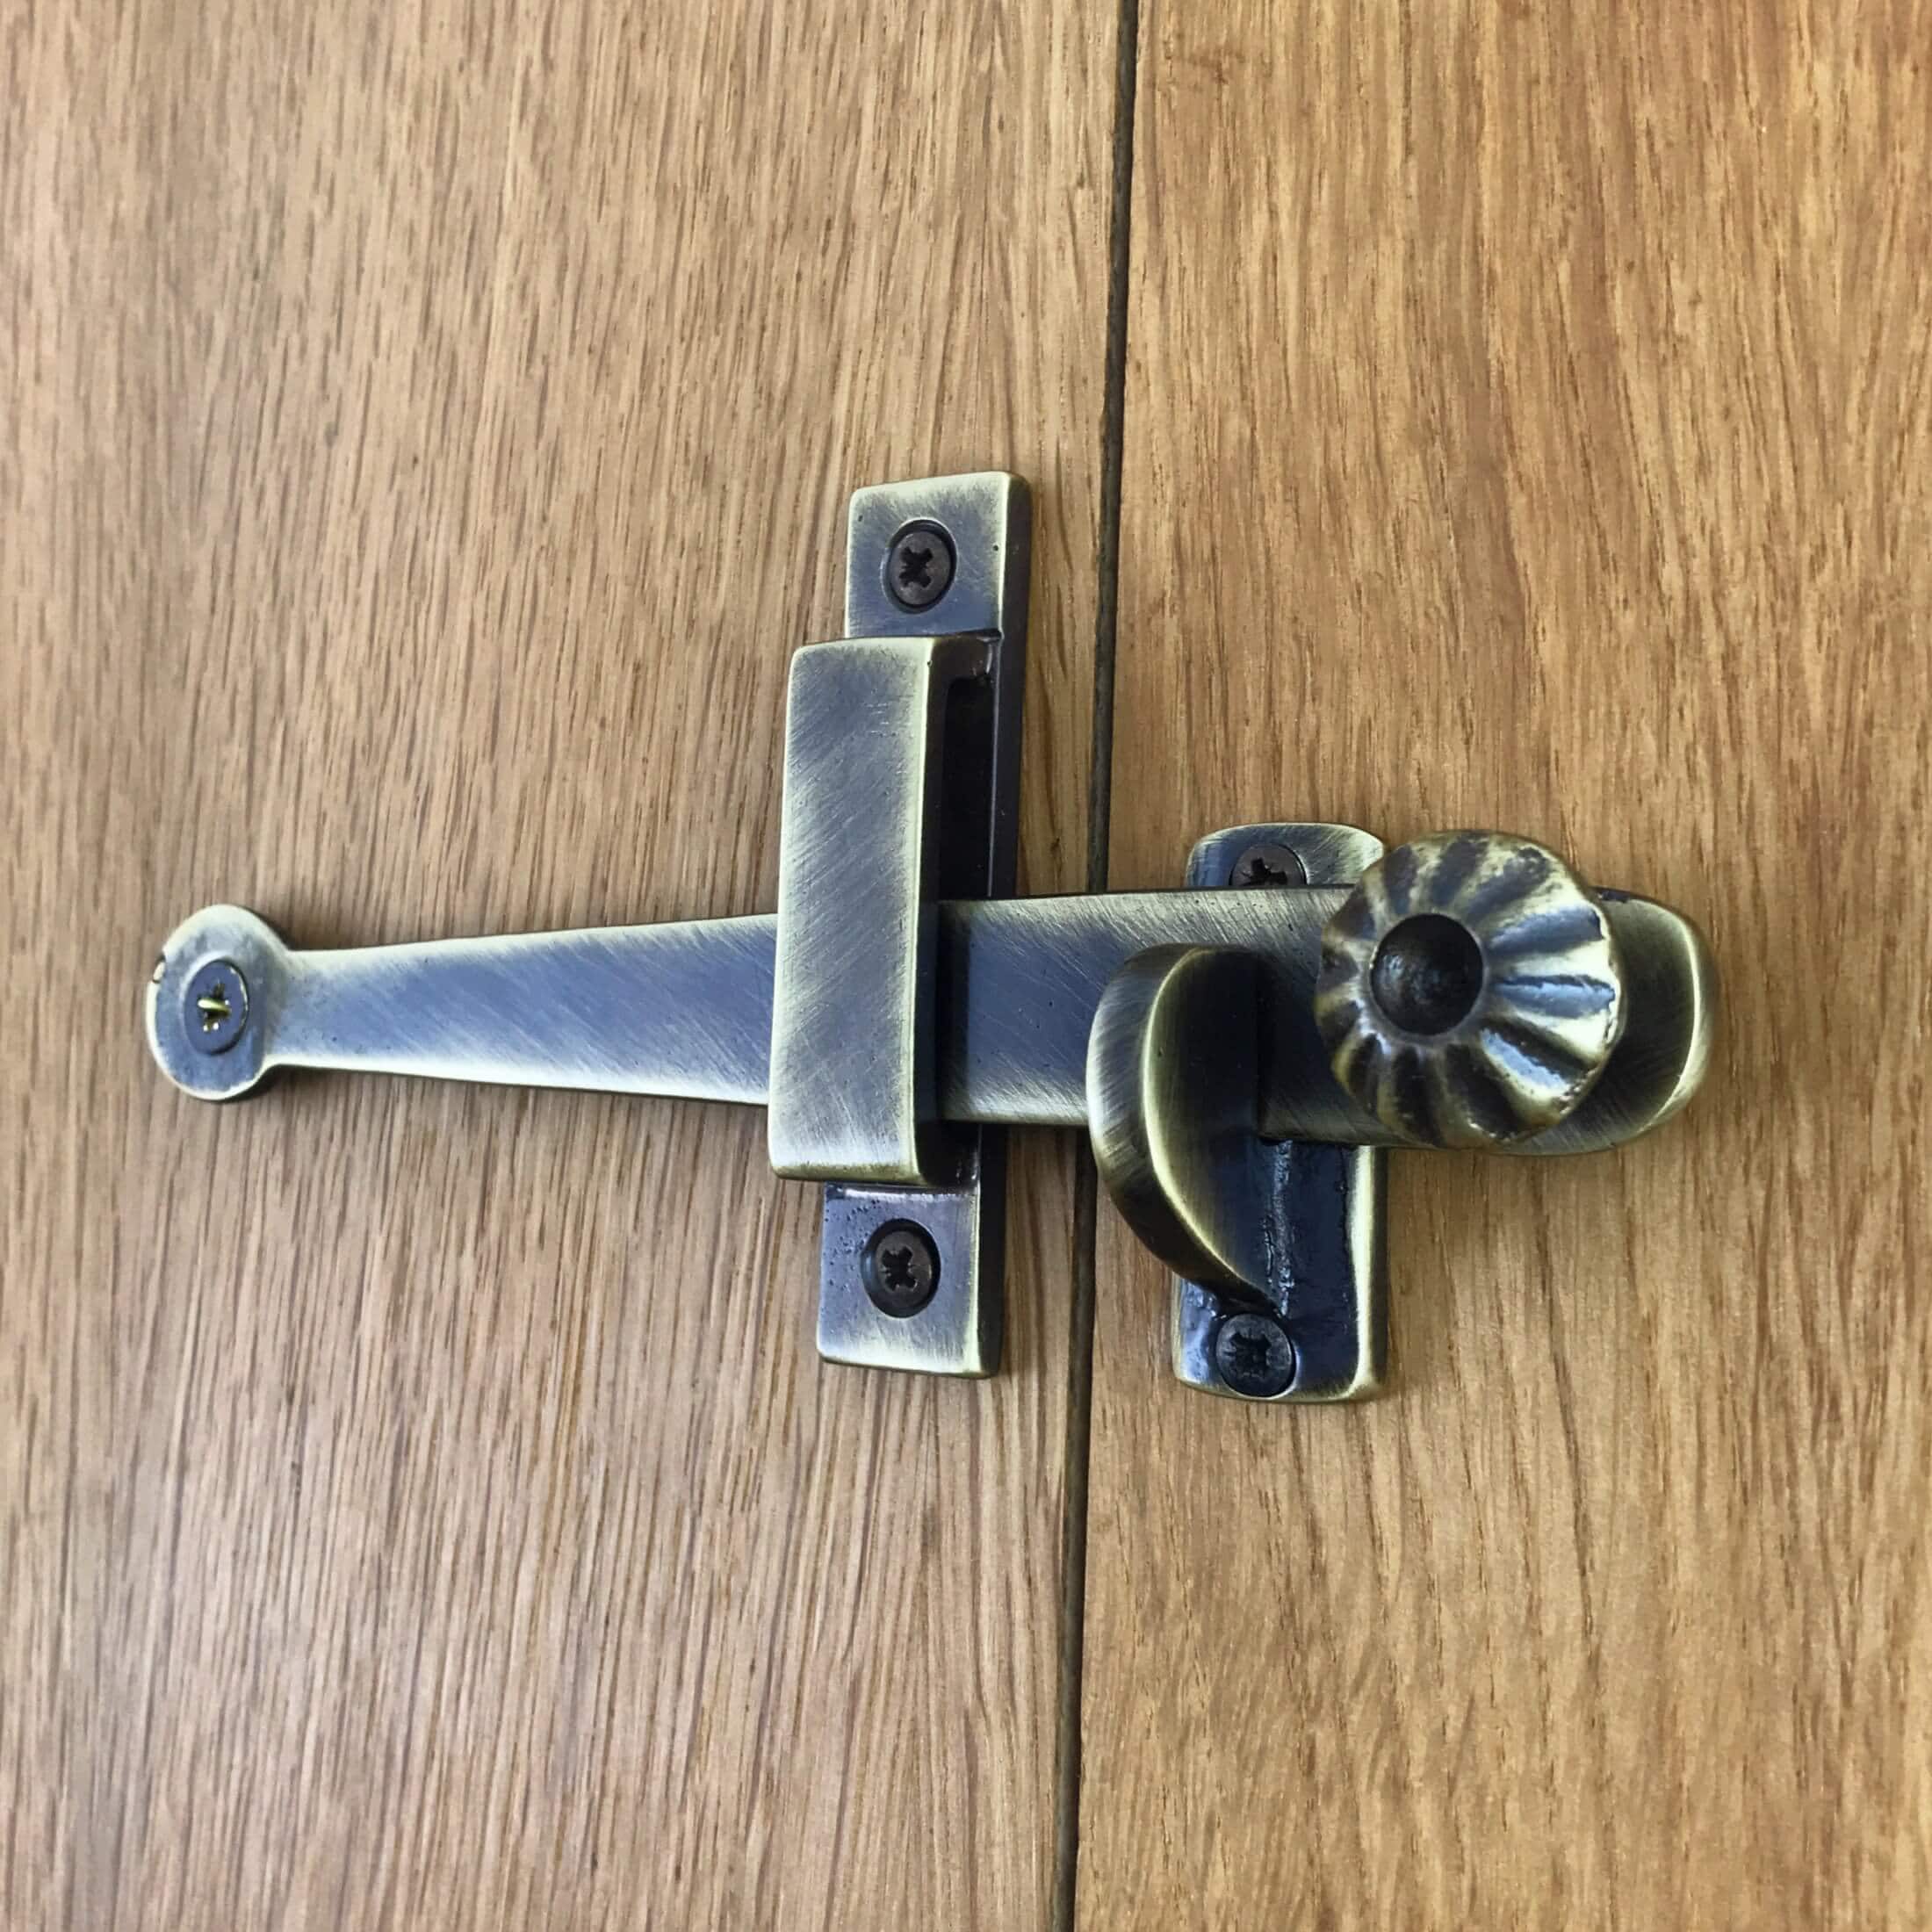 Antique Locks for Rustic Doors